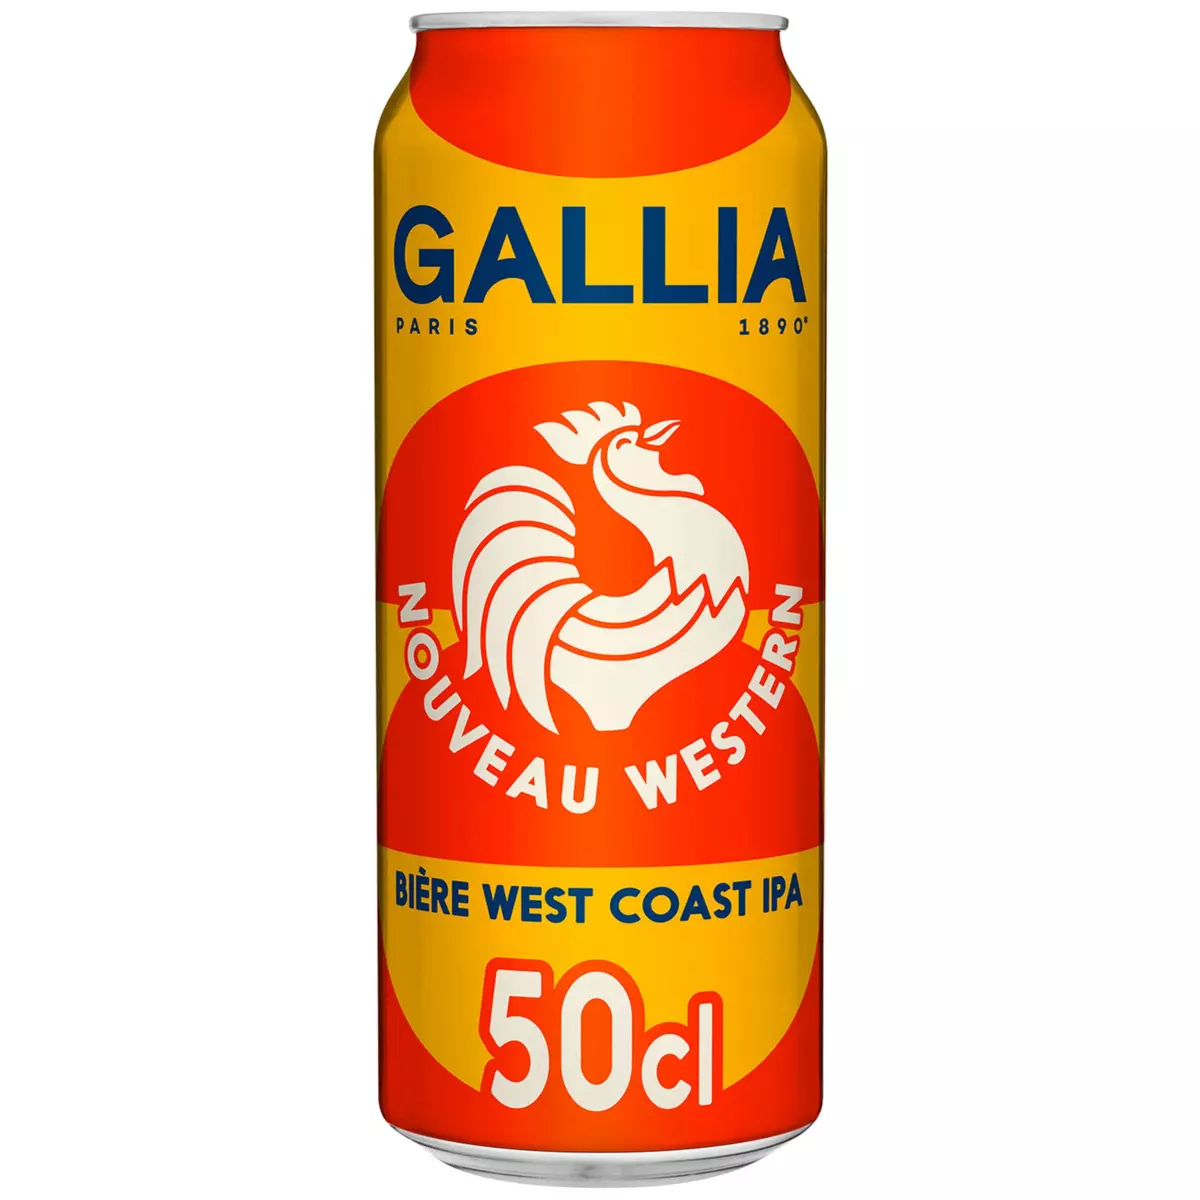 GALLIA Bière west coast IPA 50cl